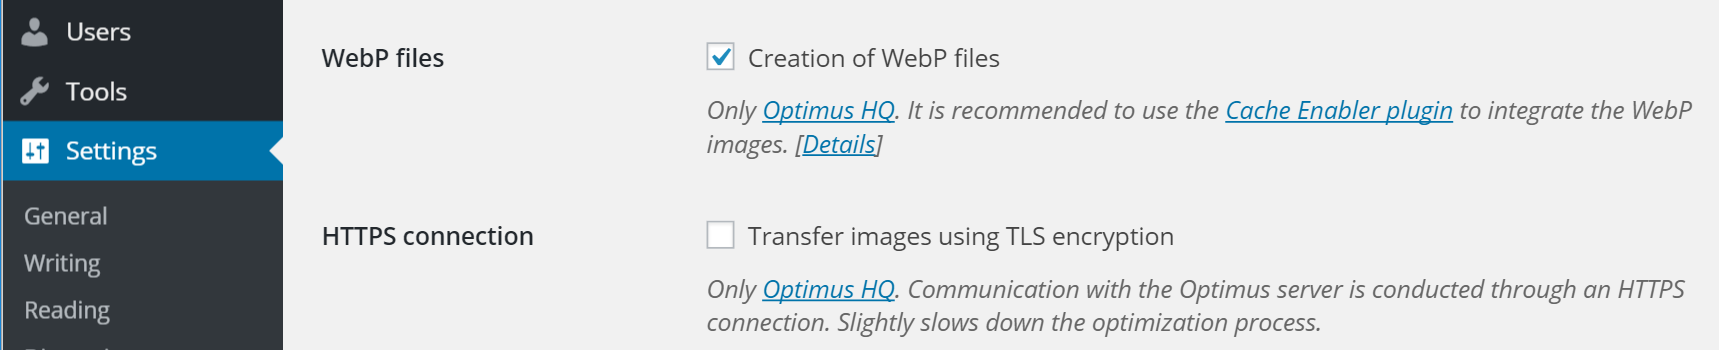 creación de archivos webp